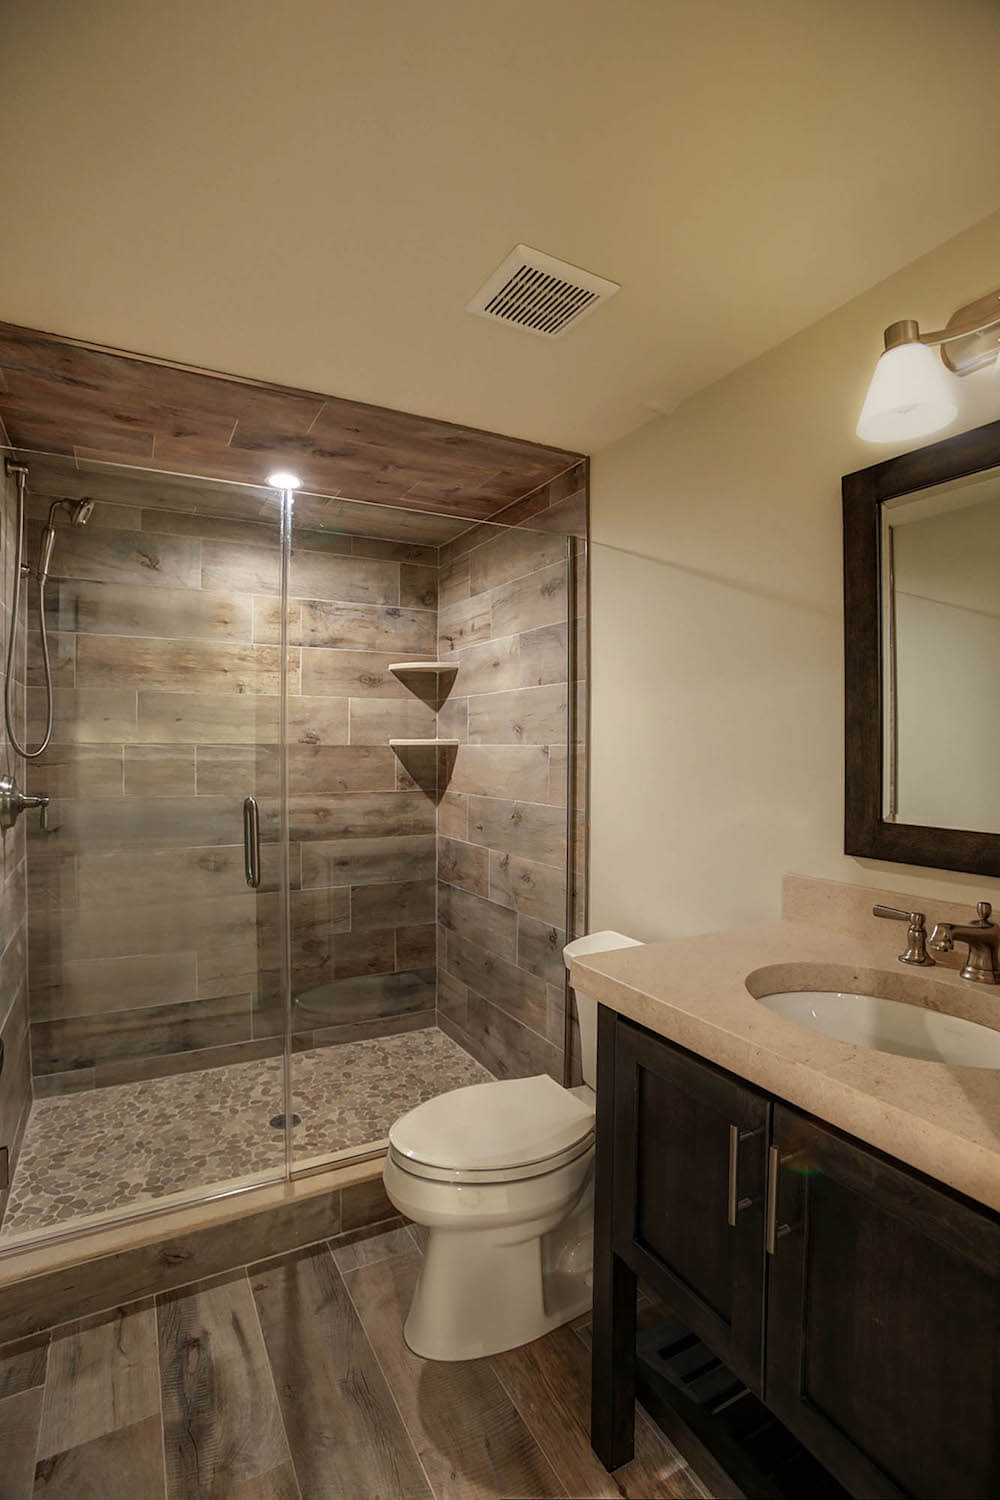 Best Tile For Basement Bathroom Floor – Flooring Tips